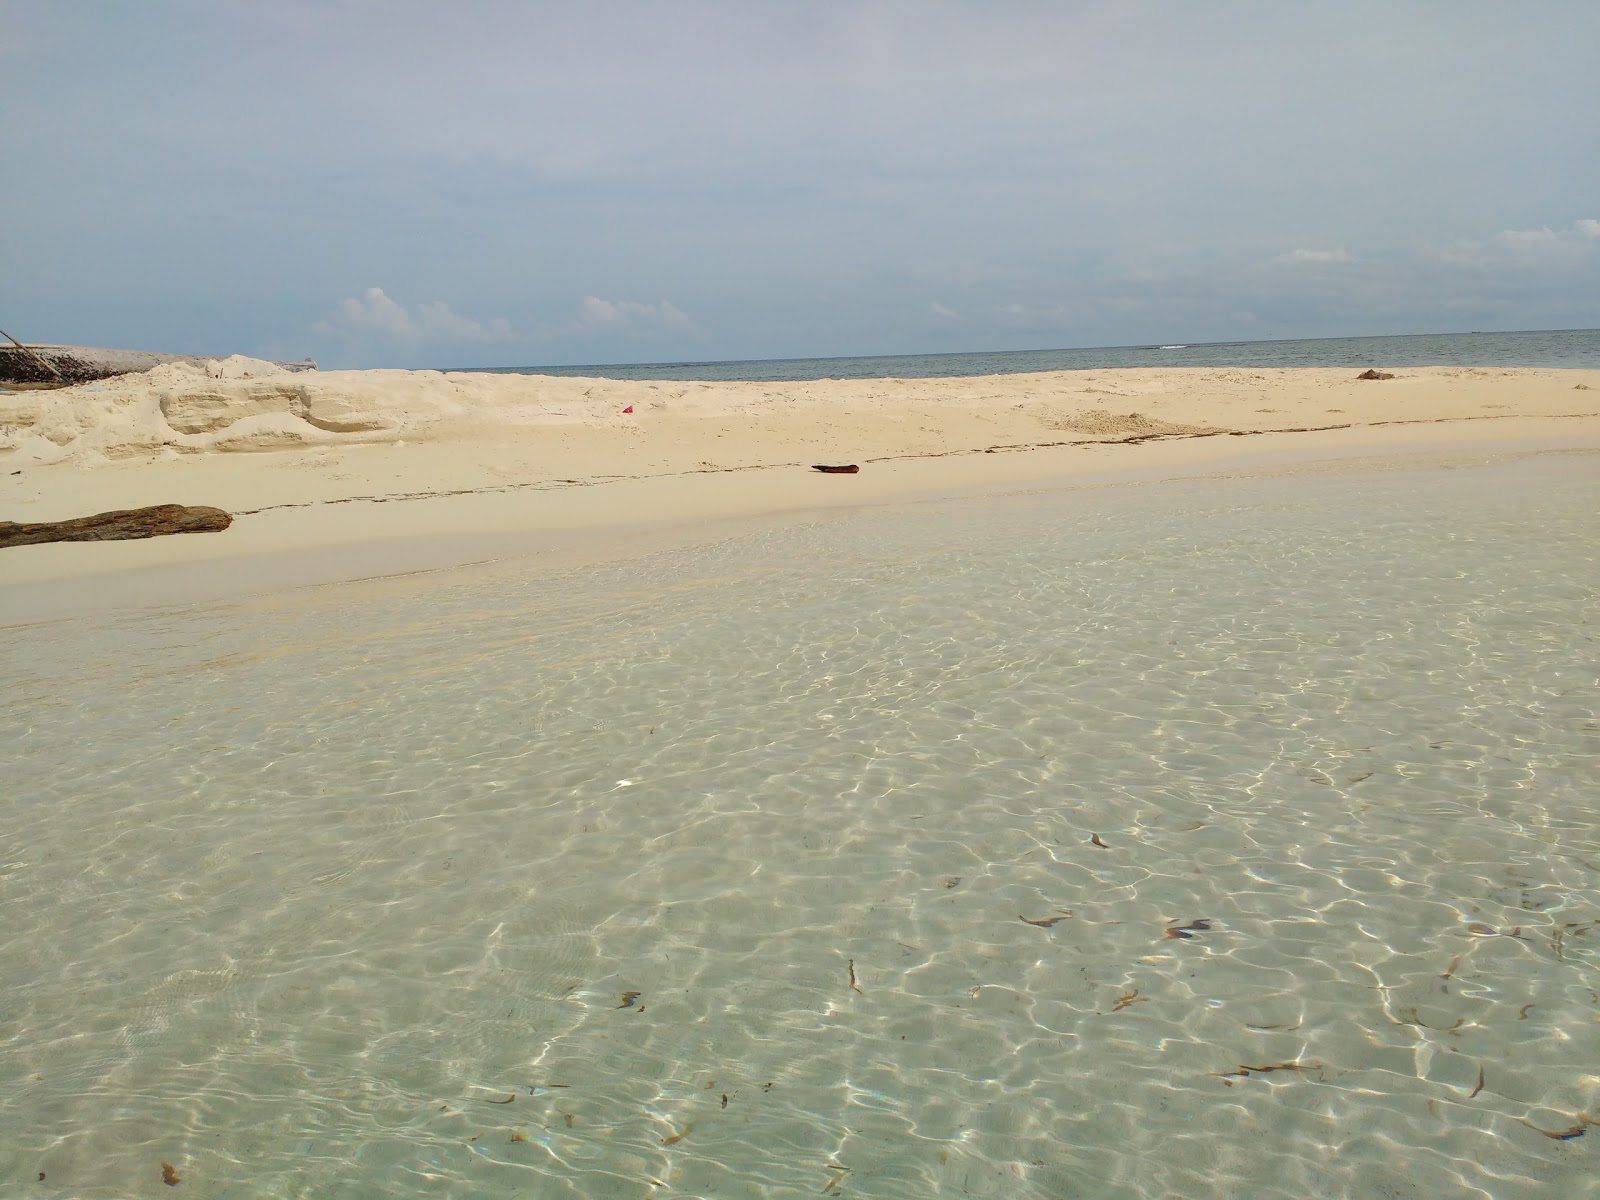 Fotografie cu Coco Blanco Island baech cu o suprafață de apa pură turcoaz